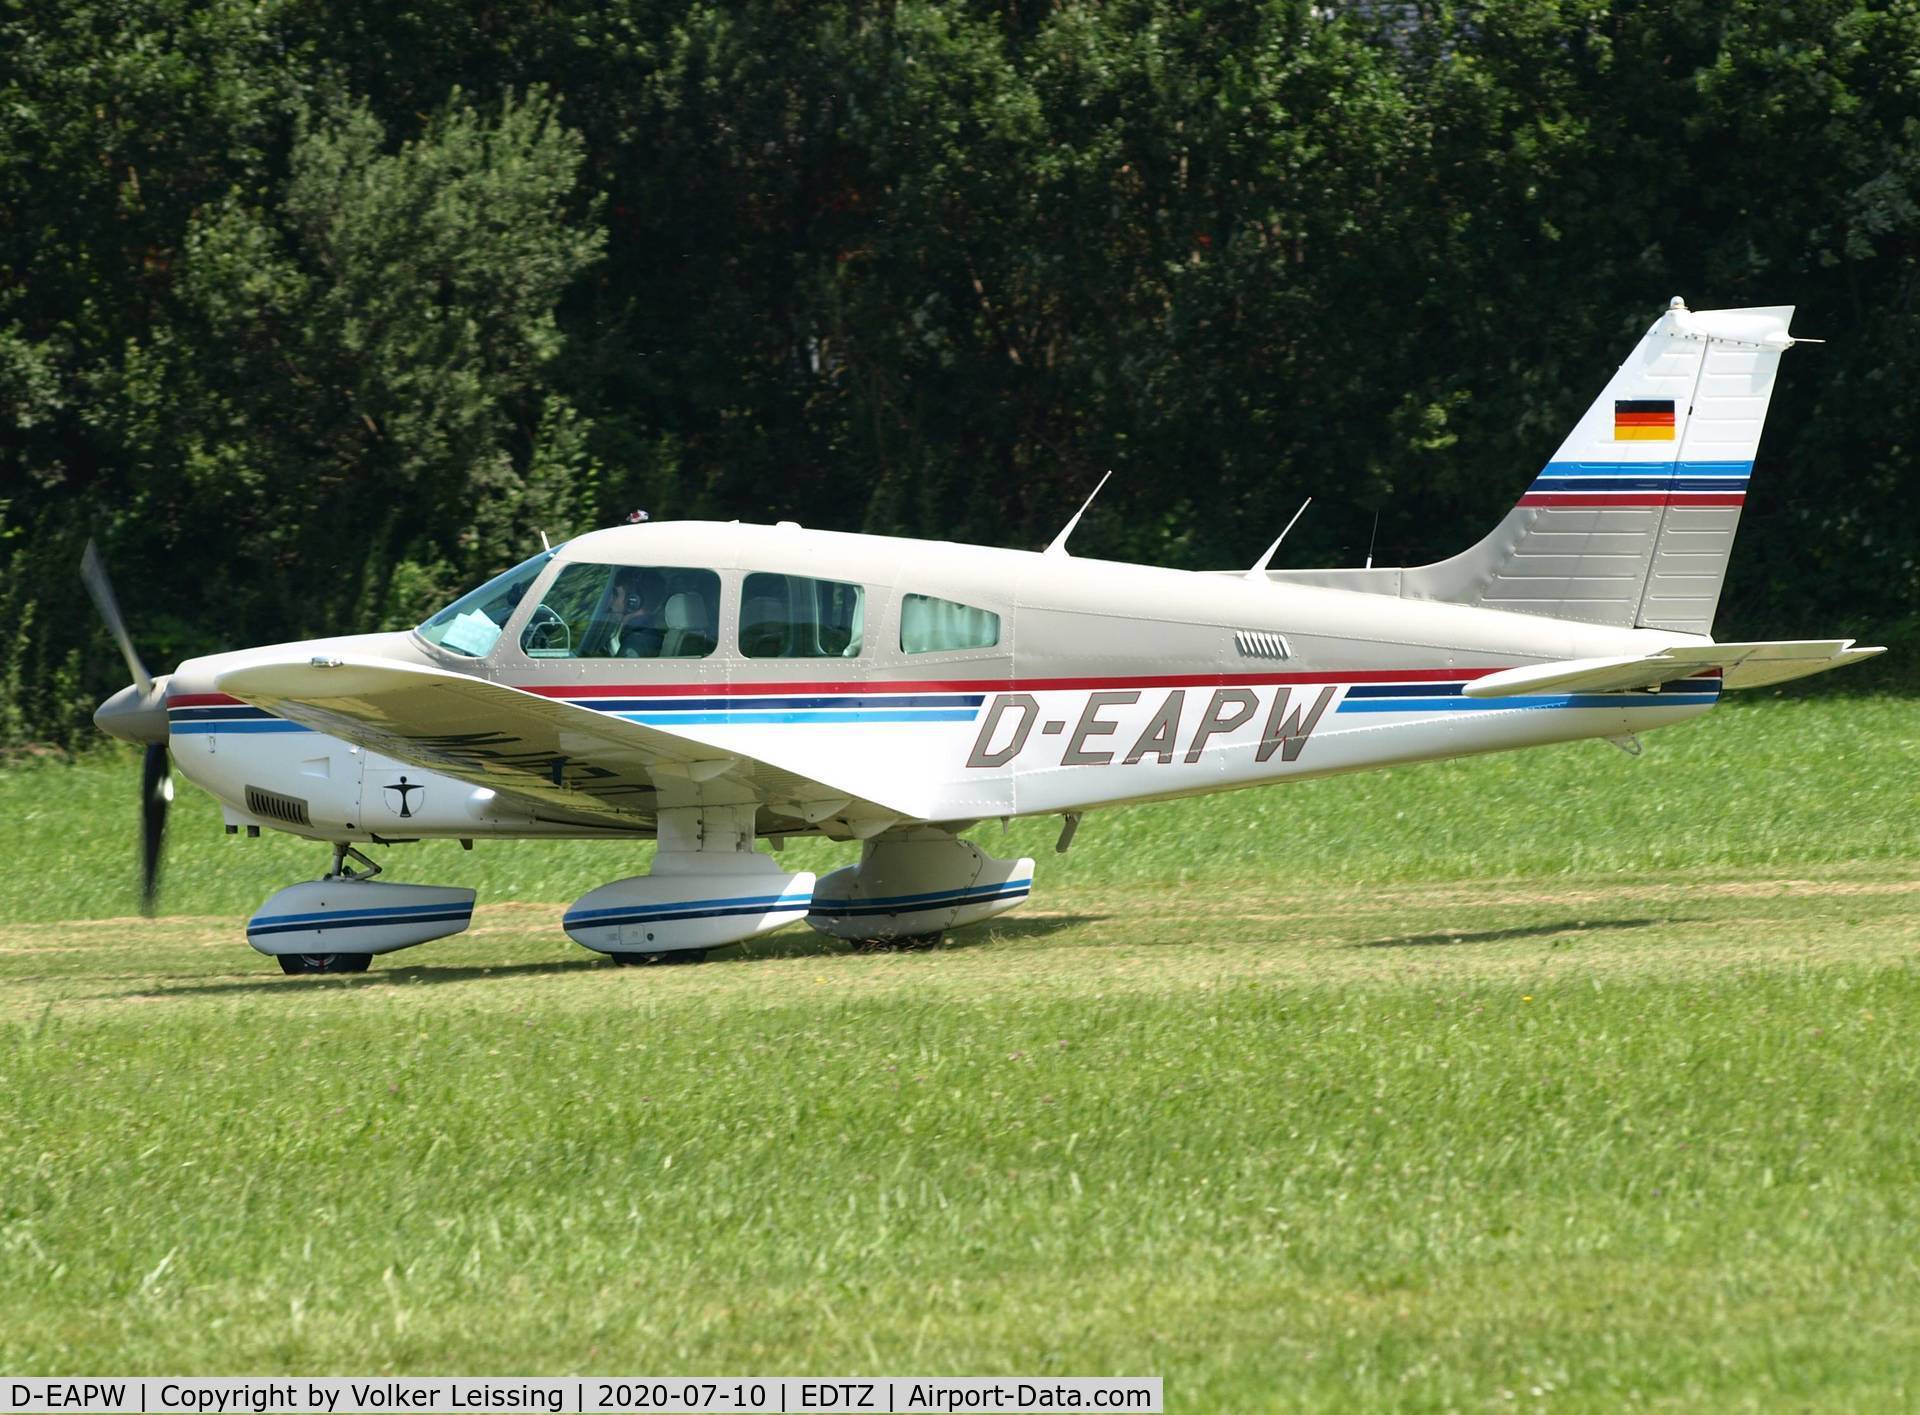 D-EAPW, 1980 Piper PA-28-181 Archer II C/N 28-8090298, landing